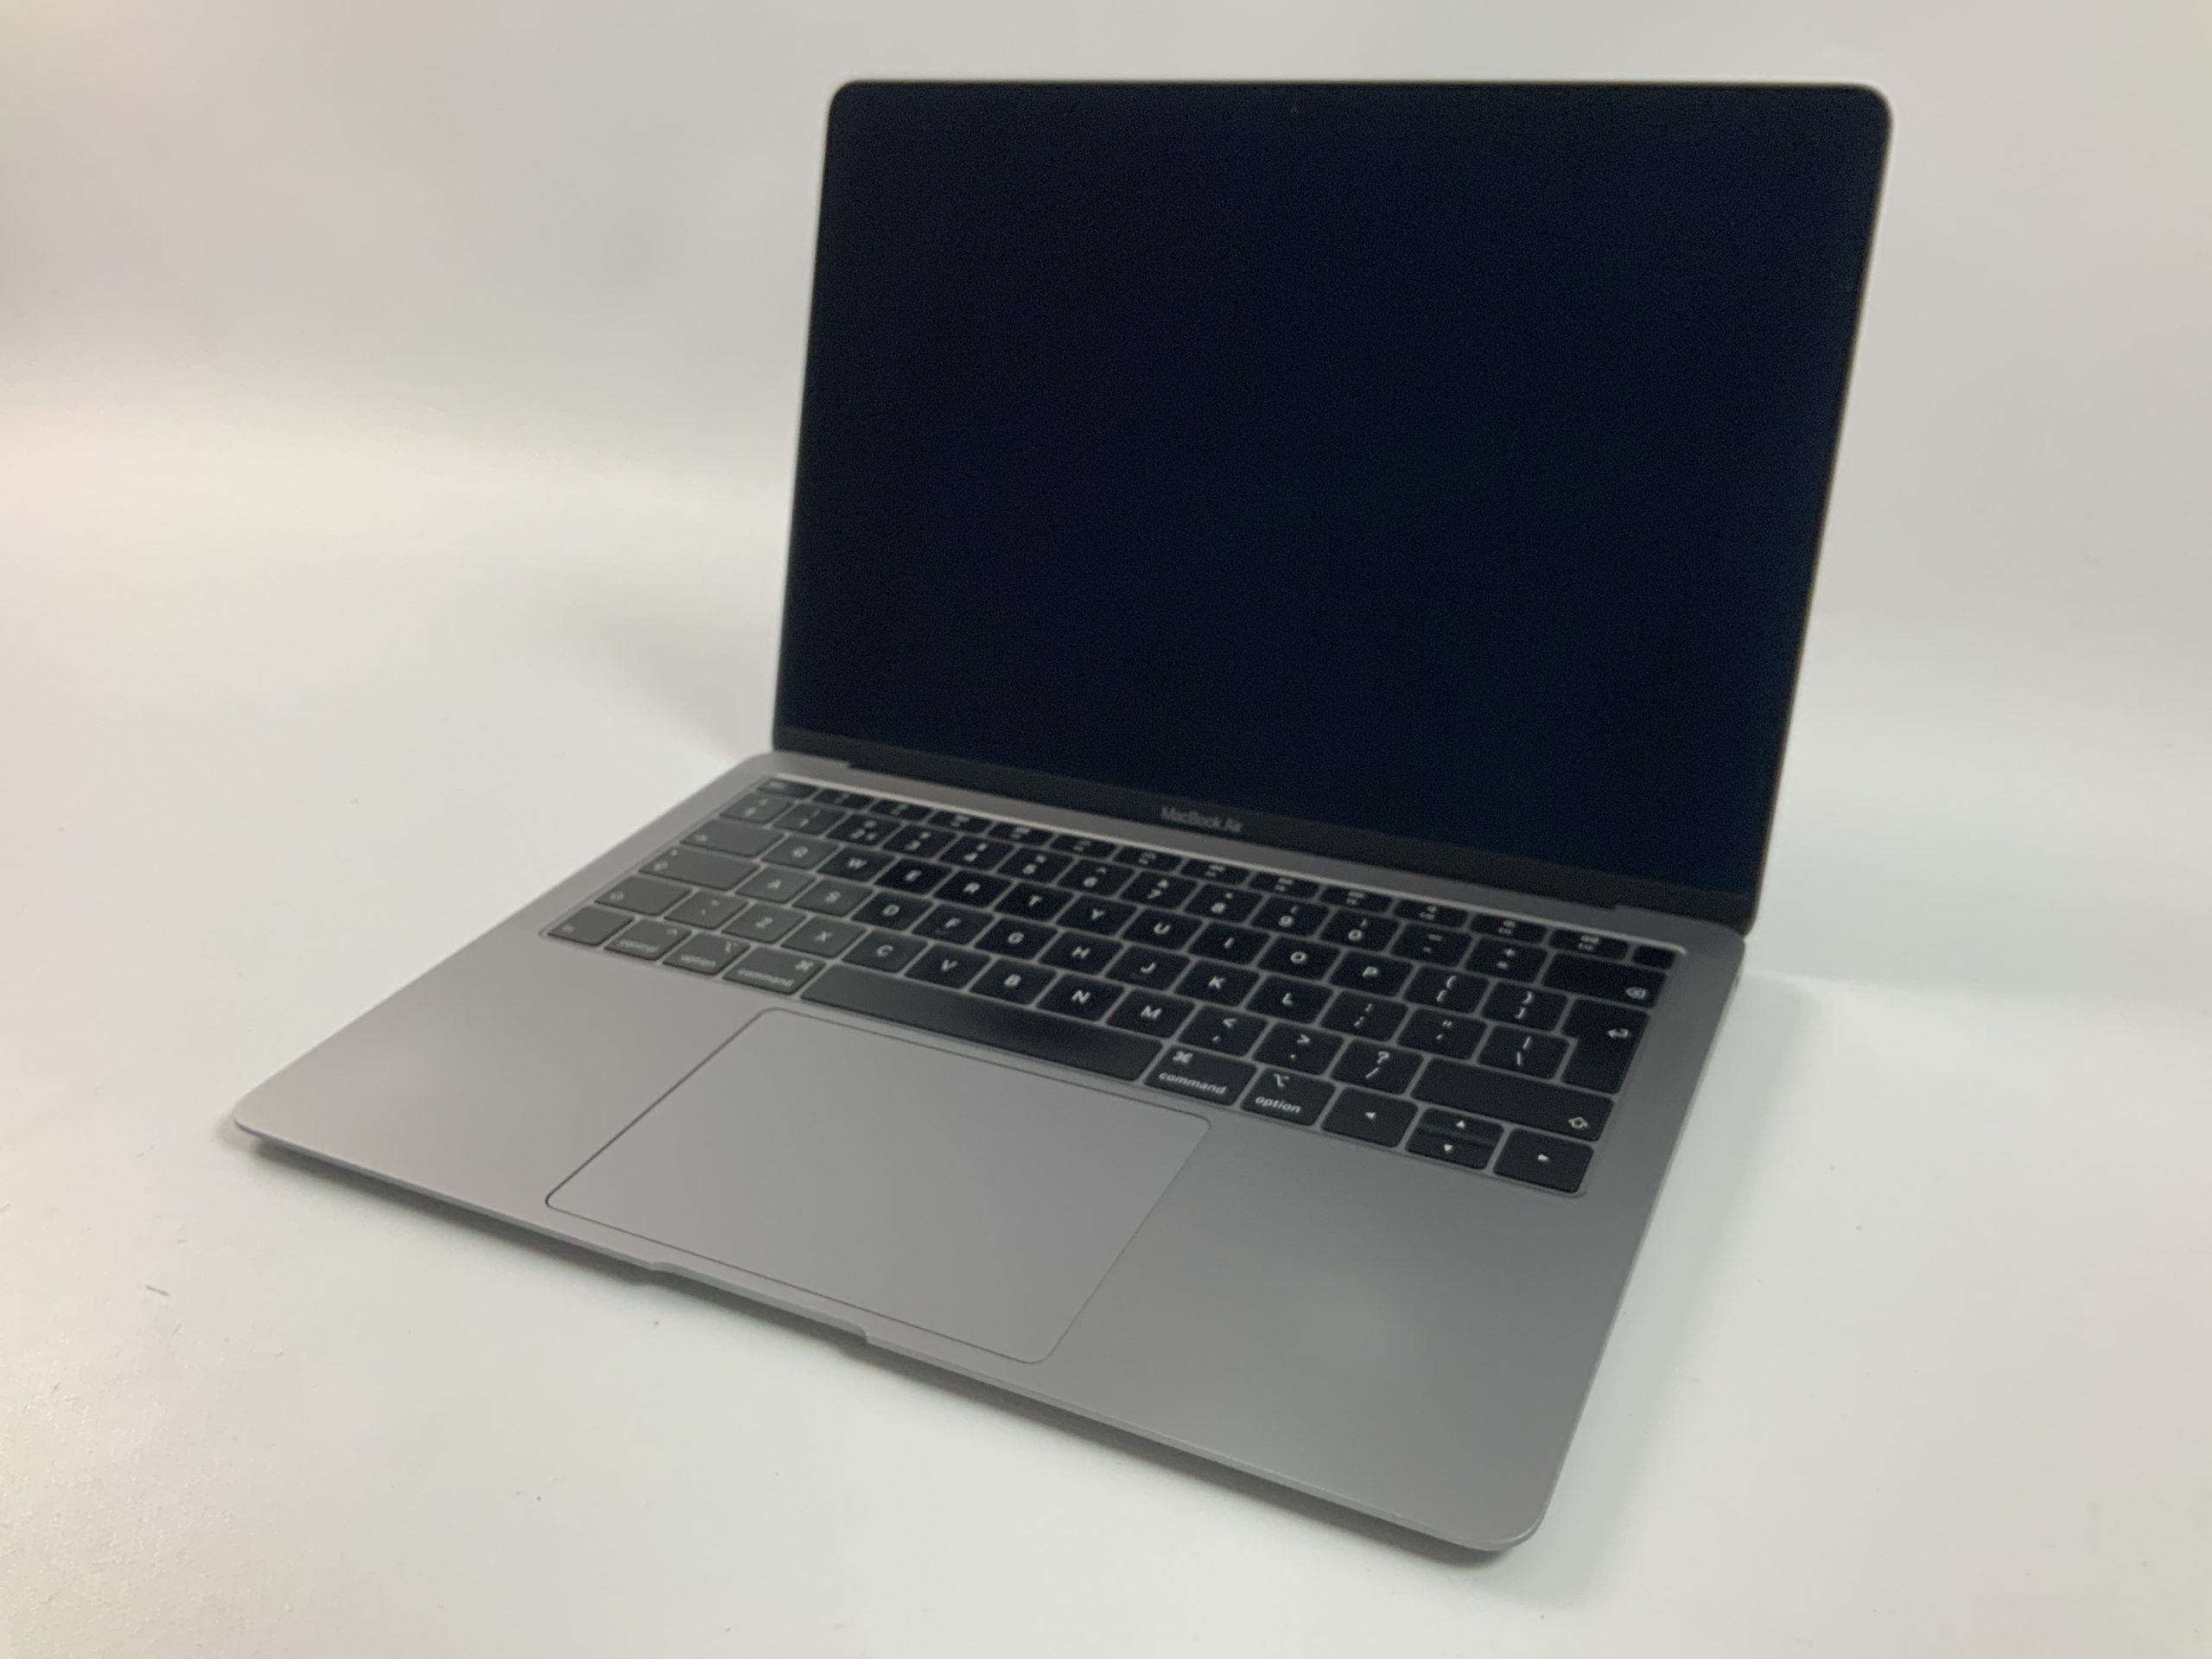 MacBook Air 13" Mid 2019 (Intel Core i5 1.6 GHz 16 GB RAM 128 GB SSD), Space Gray, Intel Core i5 1.6 GHz, 16 GB RAM, 128 GB SSD, image 1